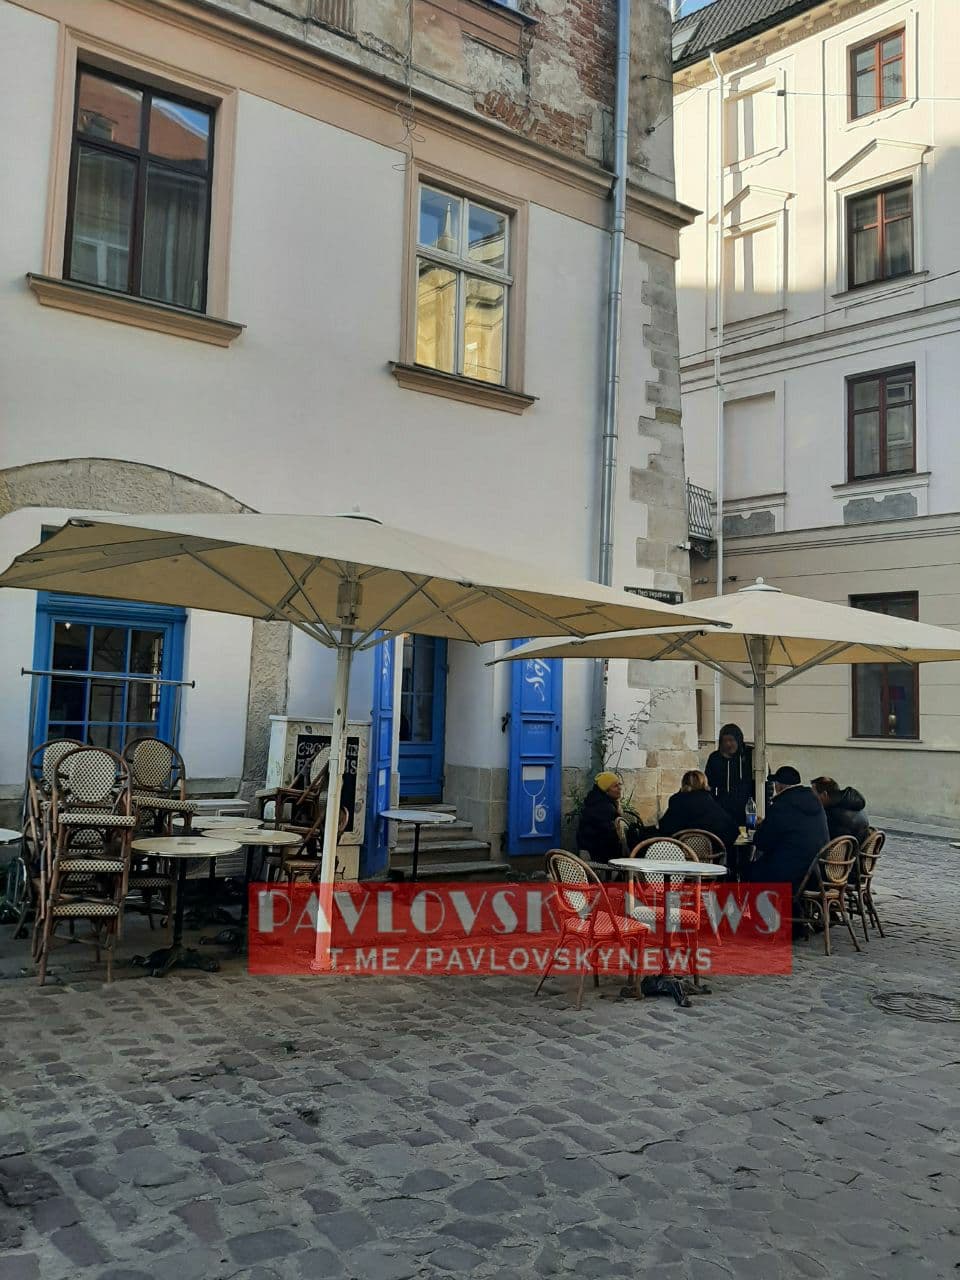 Появились фото из Львова, где кафе обслуживают клиентов, проигнорировав карантин выходного дня